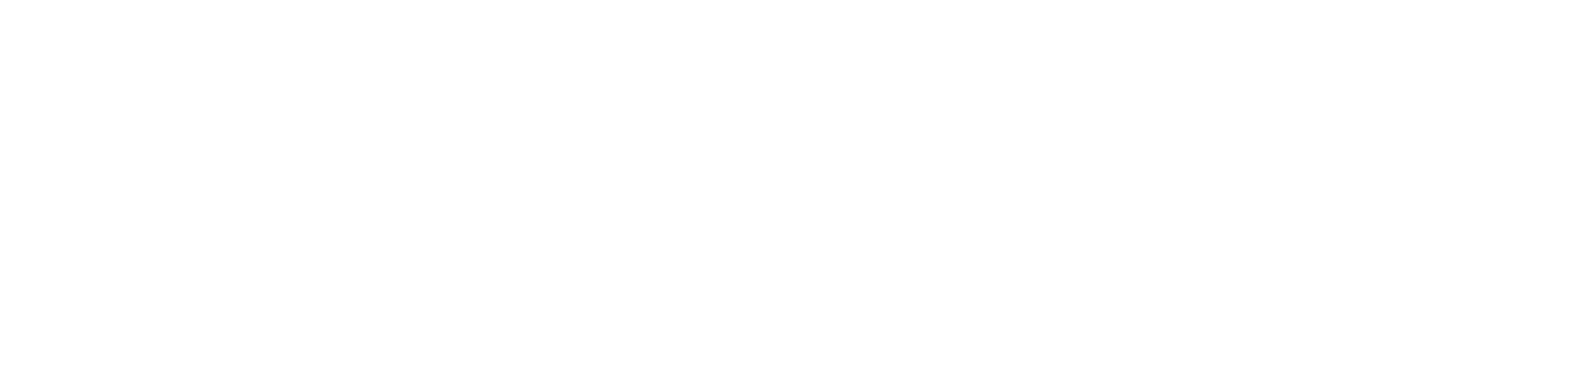 Fomento Económico Mexicano logo for dark backgrounds (transparent PNG)